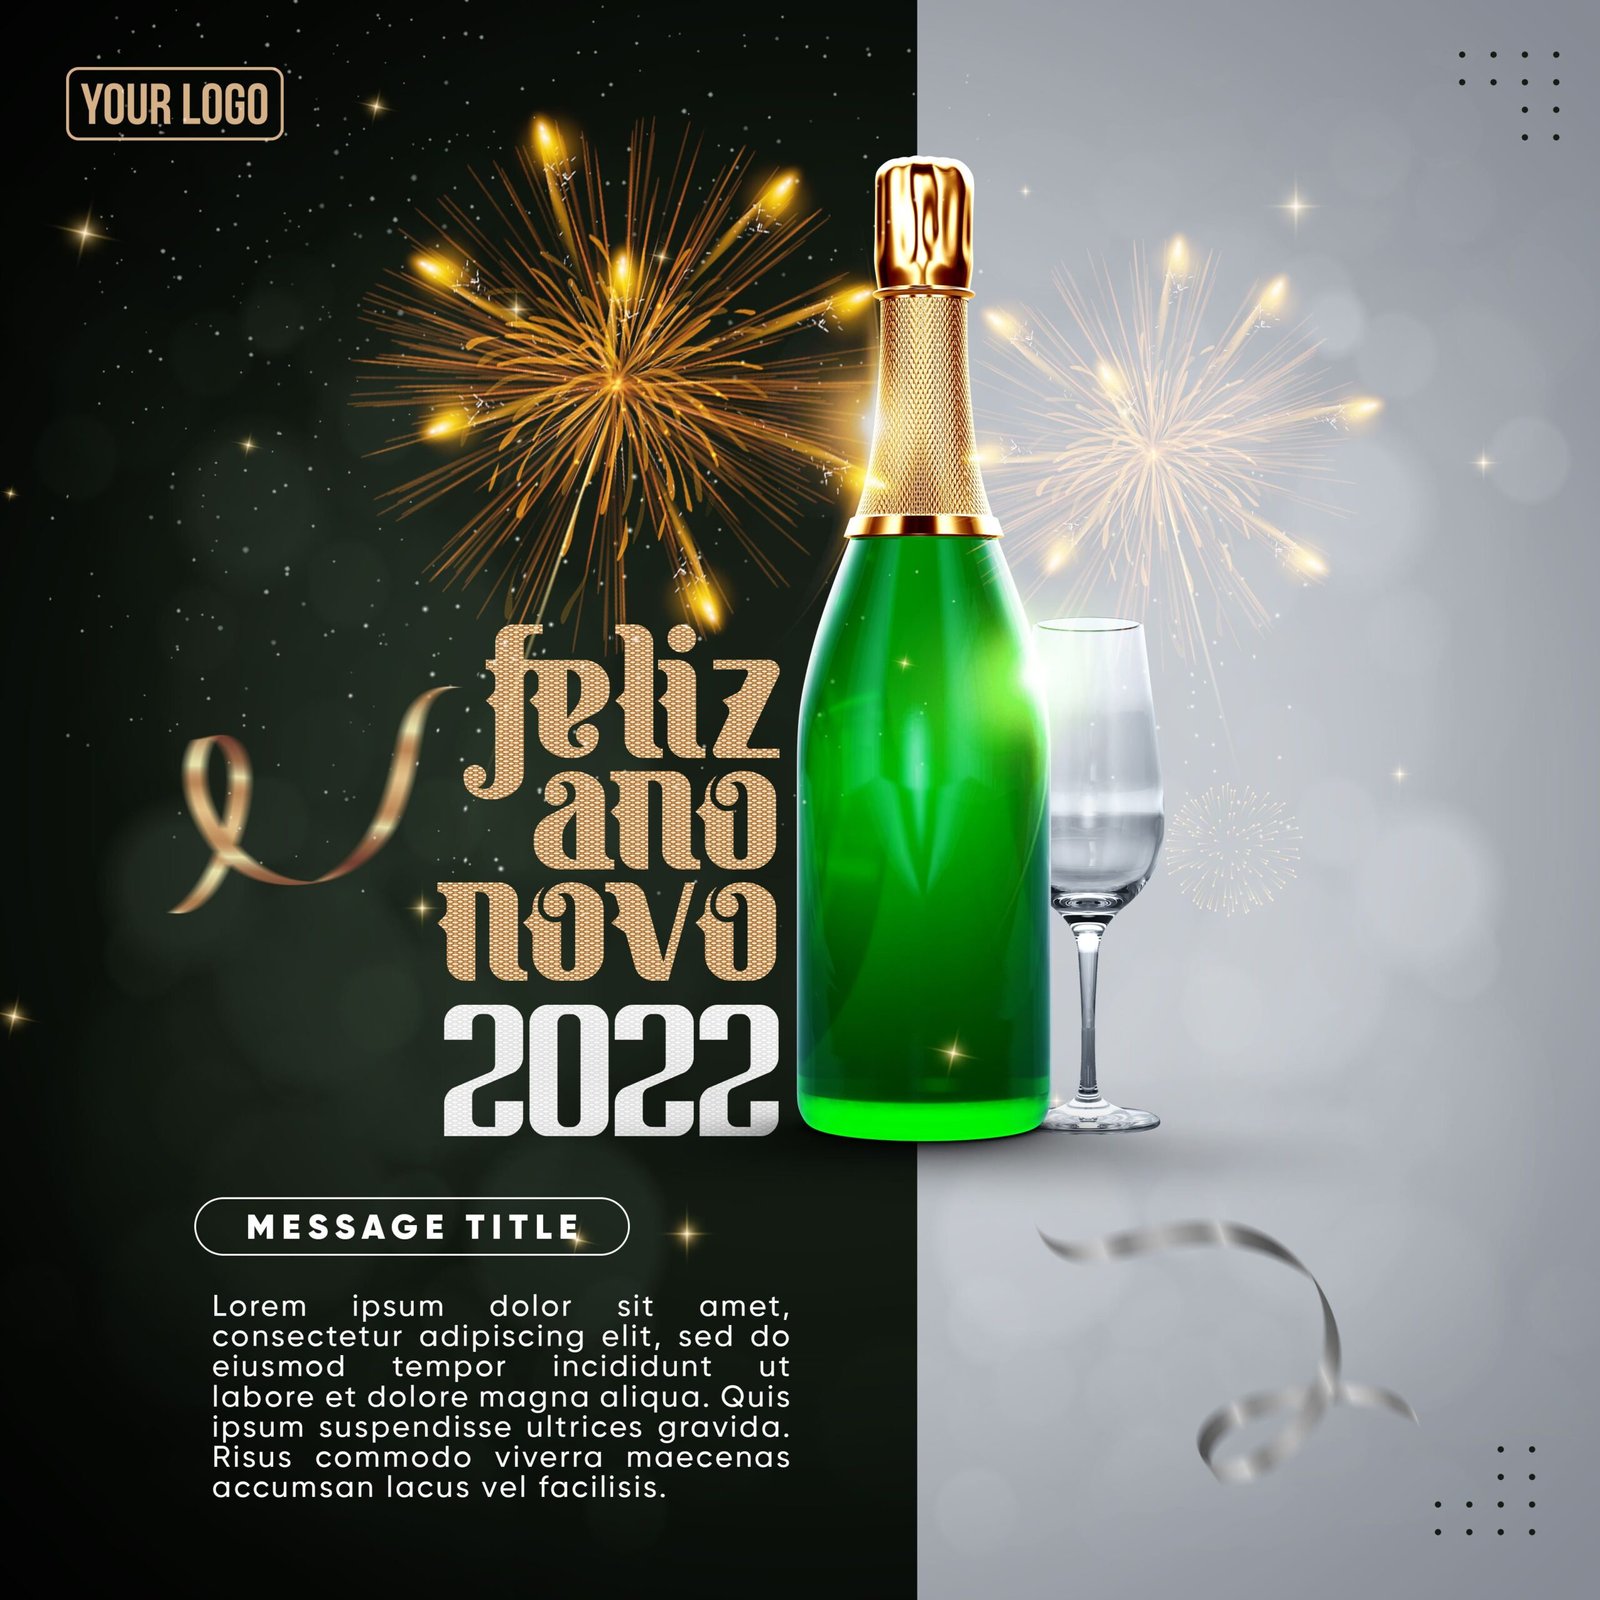 Social_media_feed_happy_new_year_2022_for_celebration